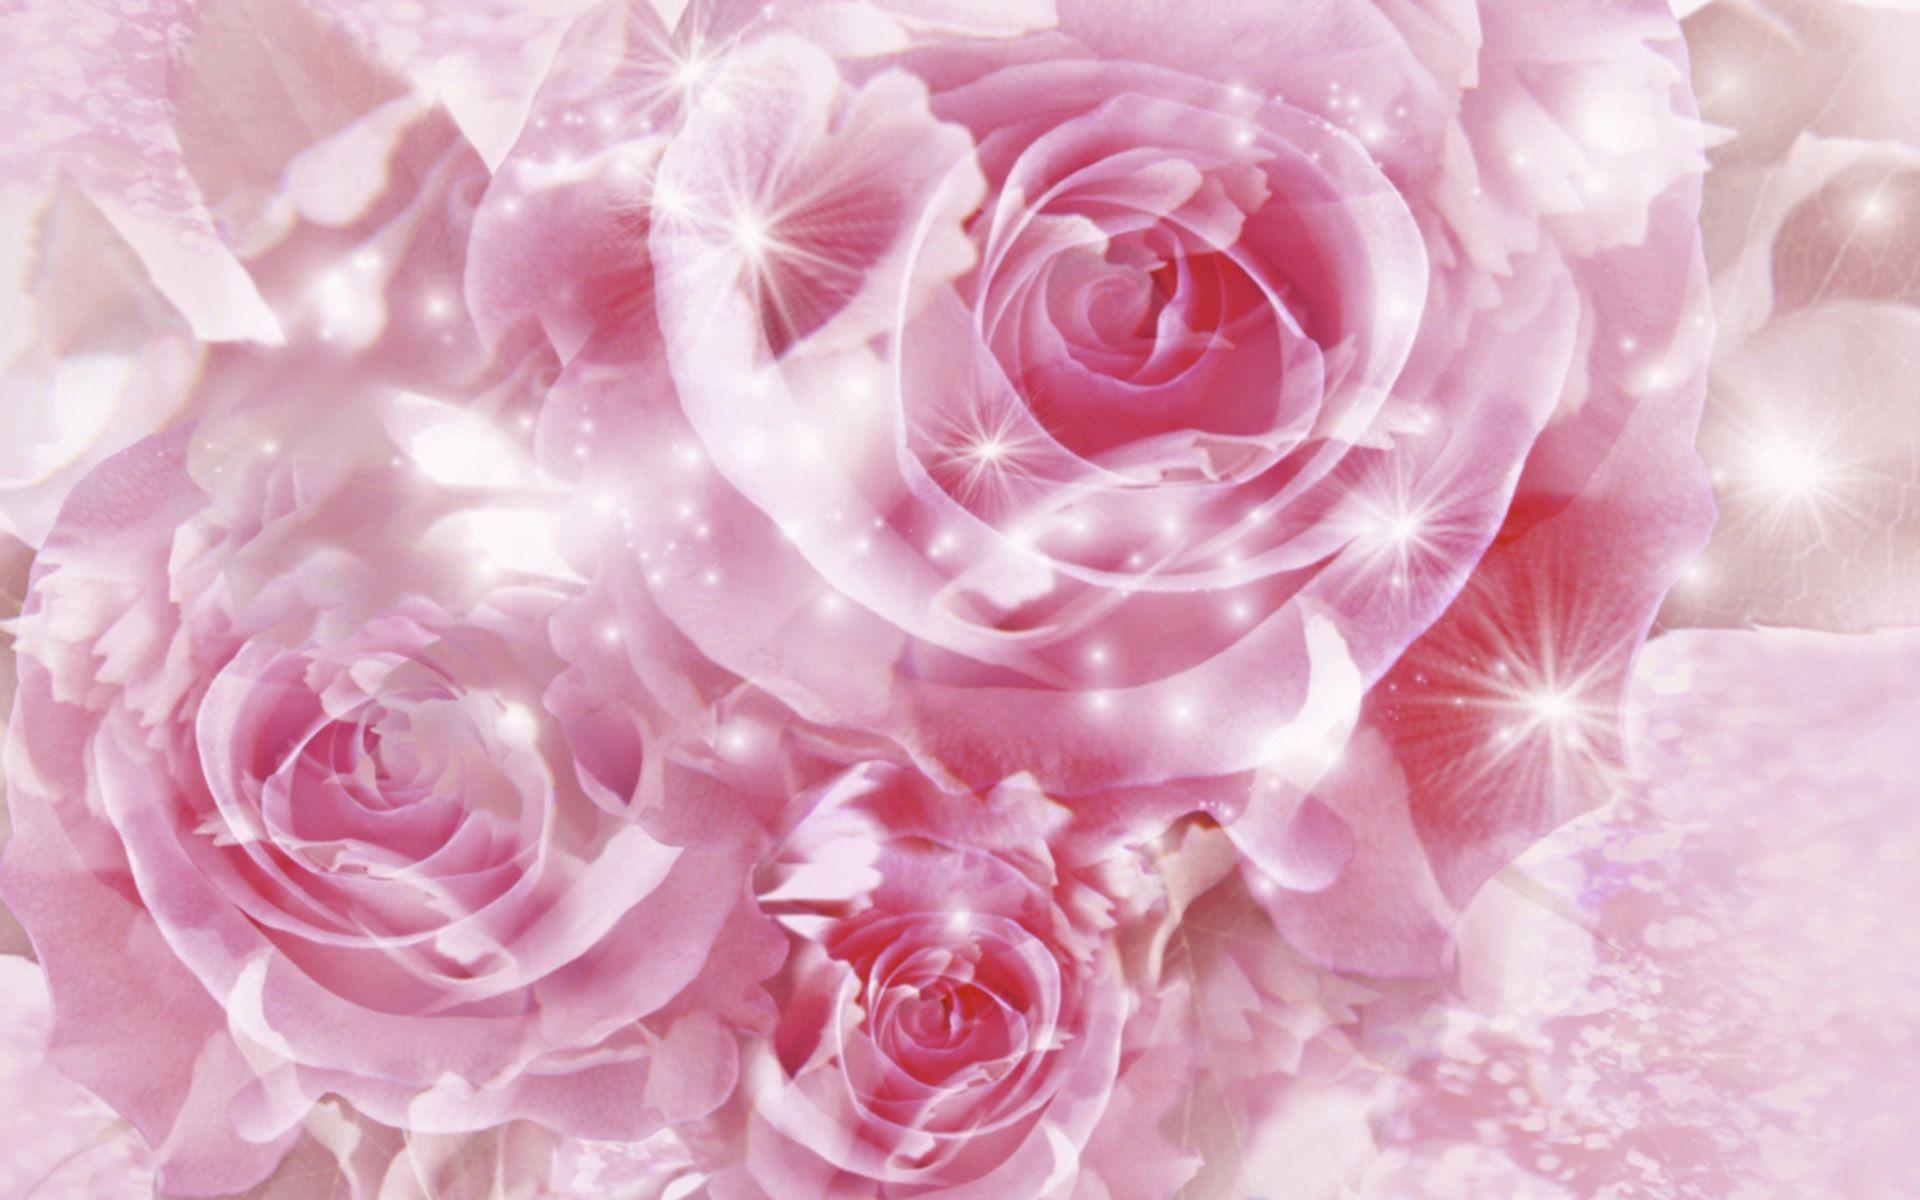 Rose Wallpapers Pic Downlode - Wallpaper Cave